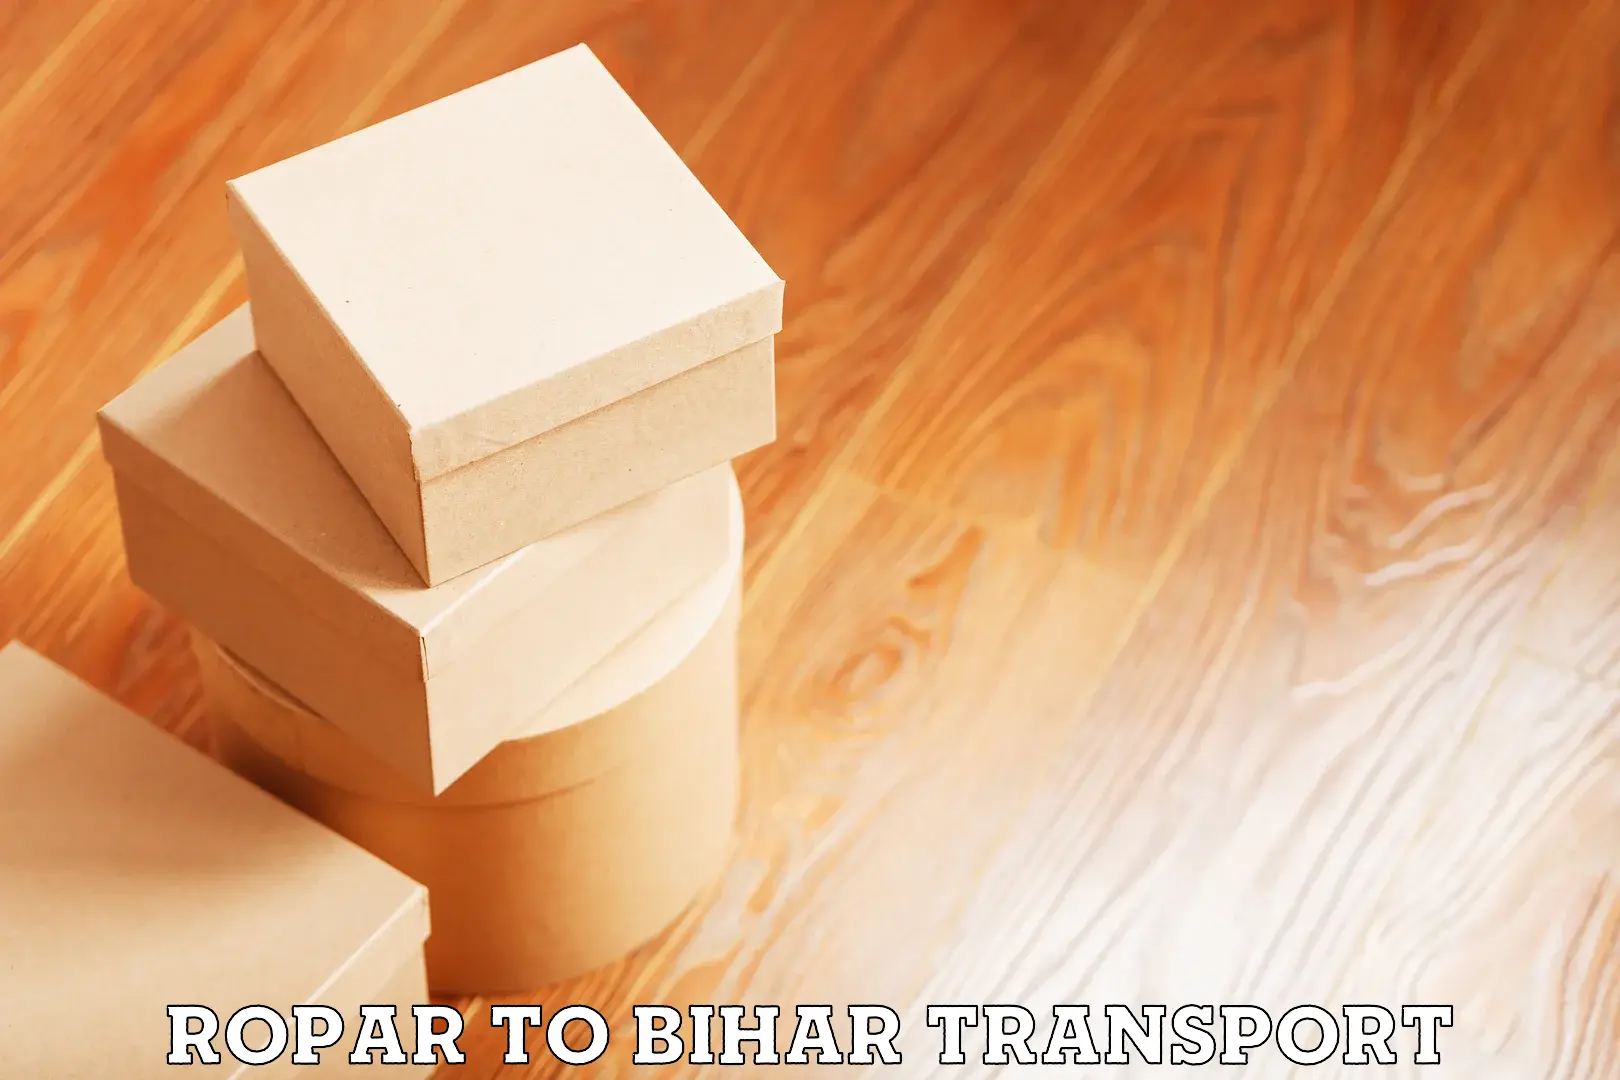 Delivery service Ropar to Aurangabad Bihar